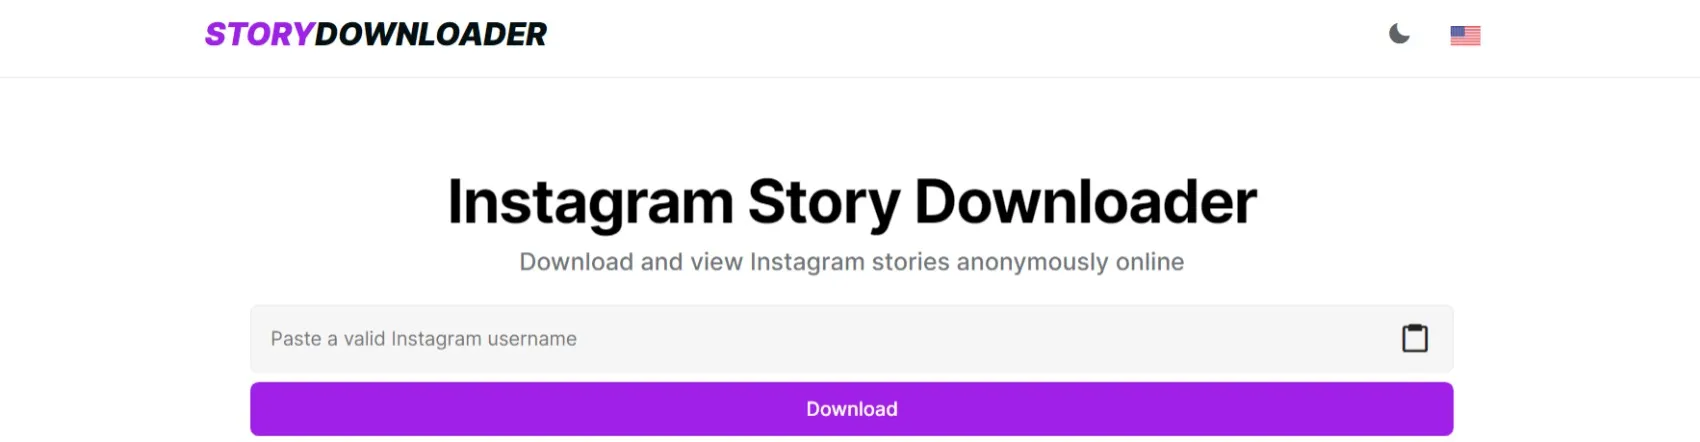 storydownloader.app